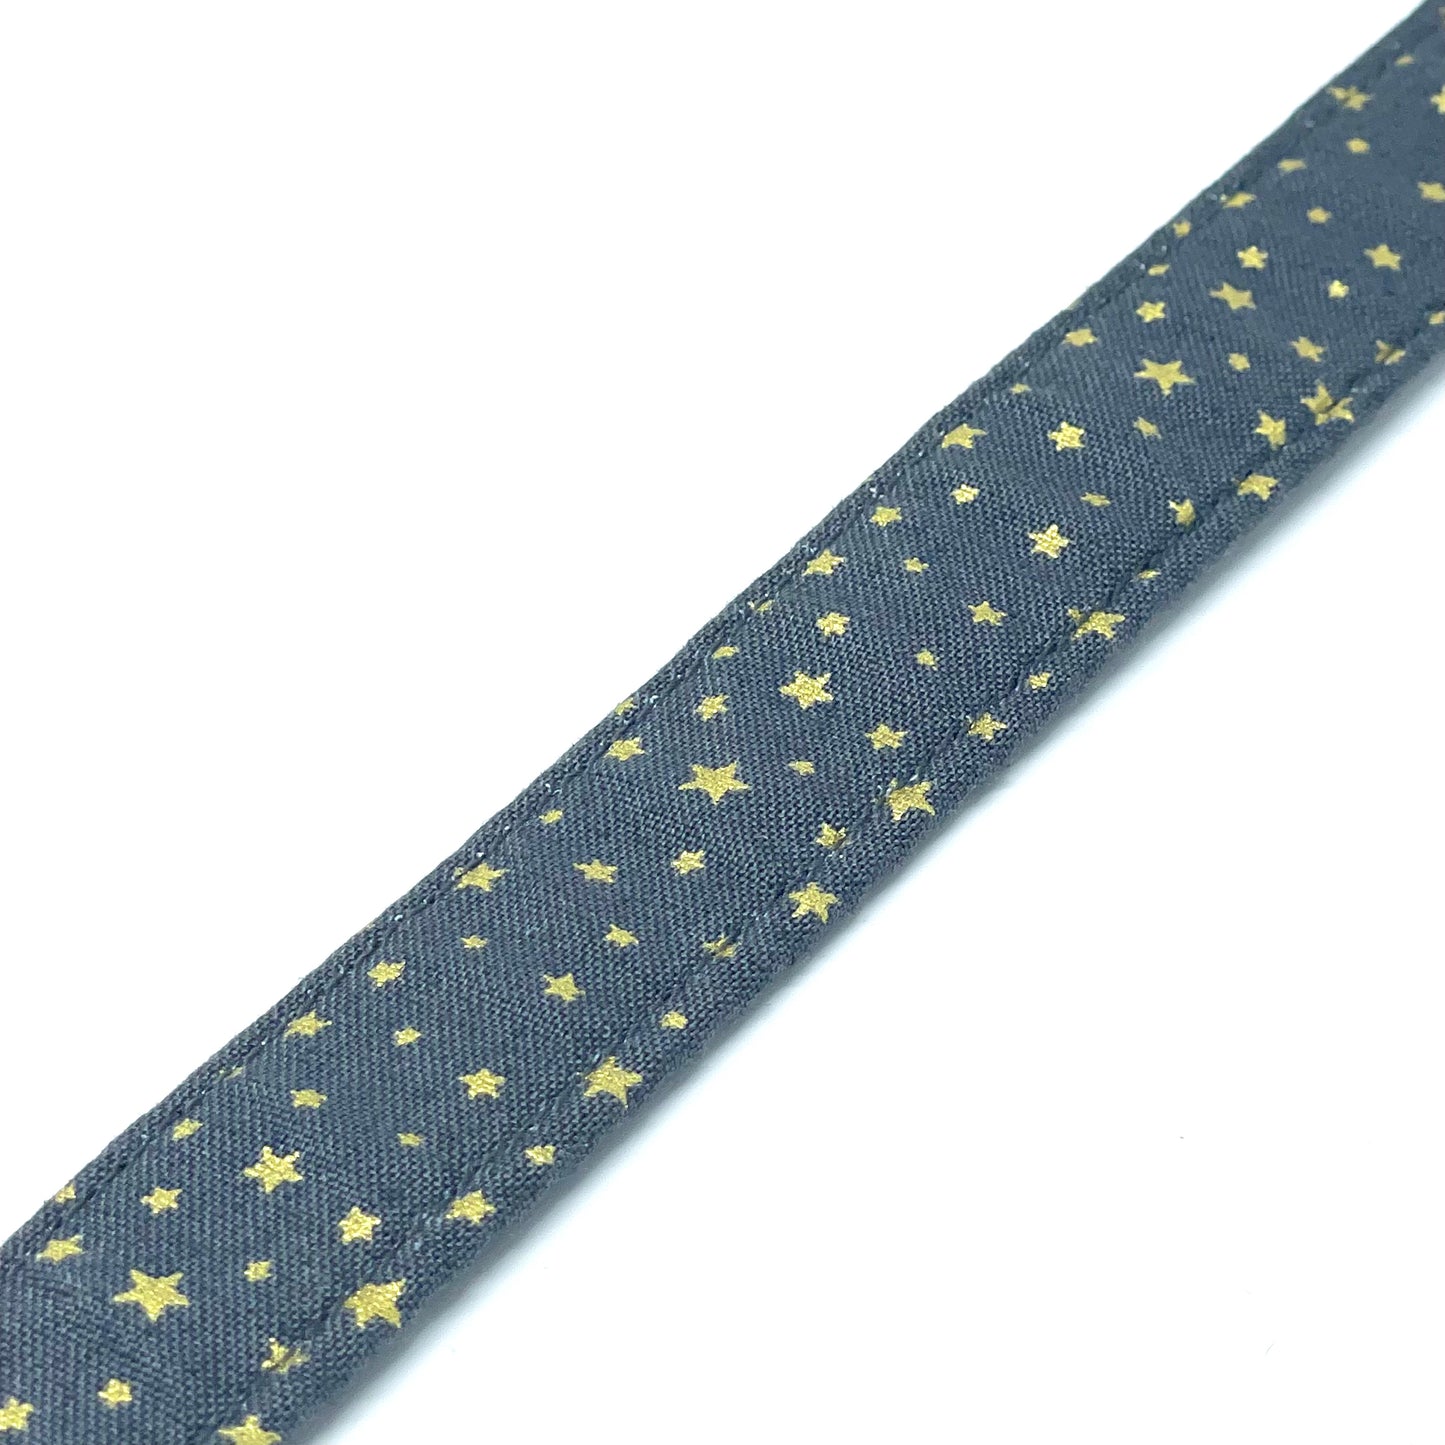 Festive Grey Stars Dog Collar